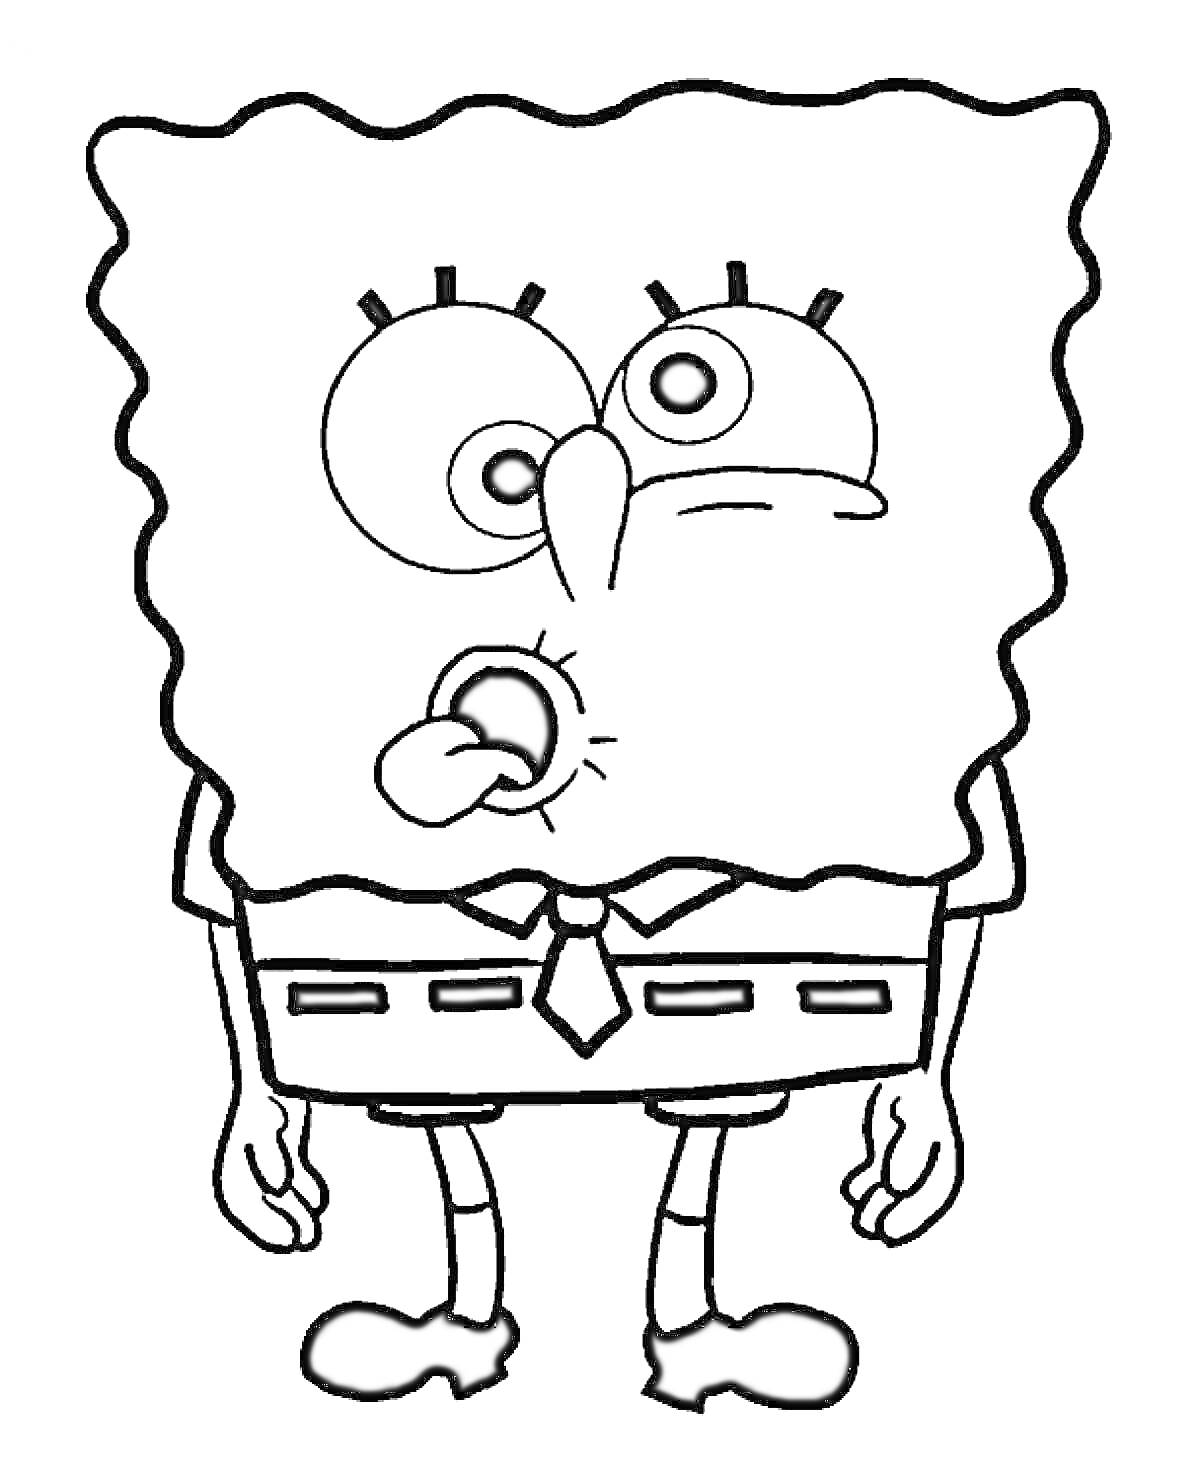 Раскраска Рисунок персонажа с квадратной головой, в одежде и галстуке, с удивленным выражением лица и языком наружу